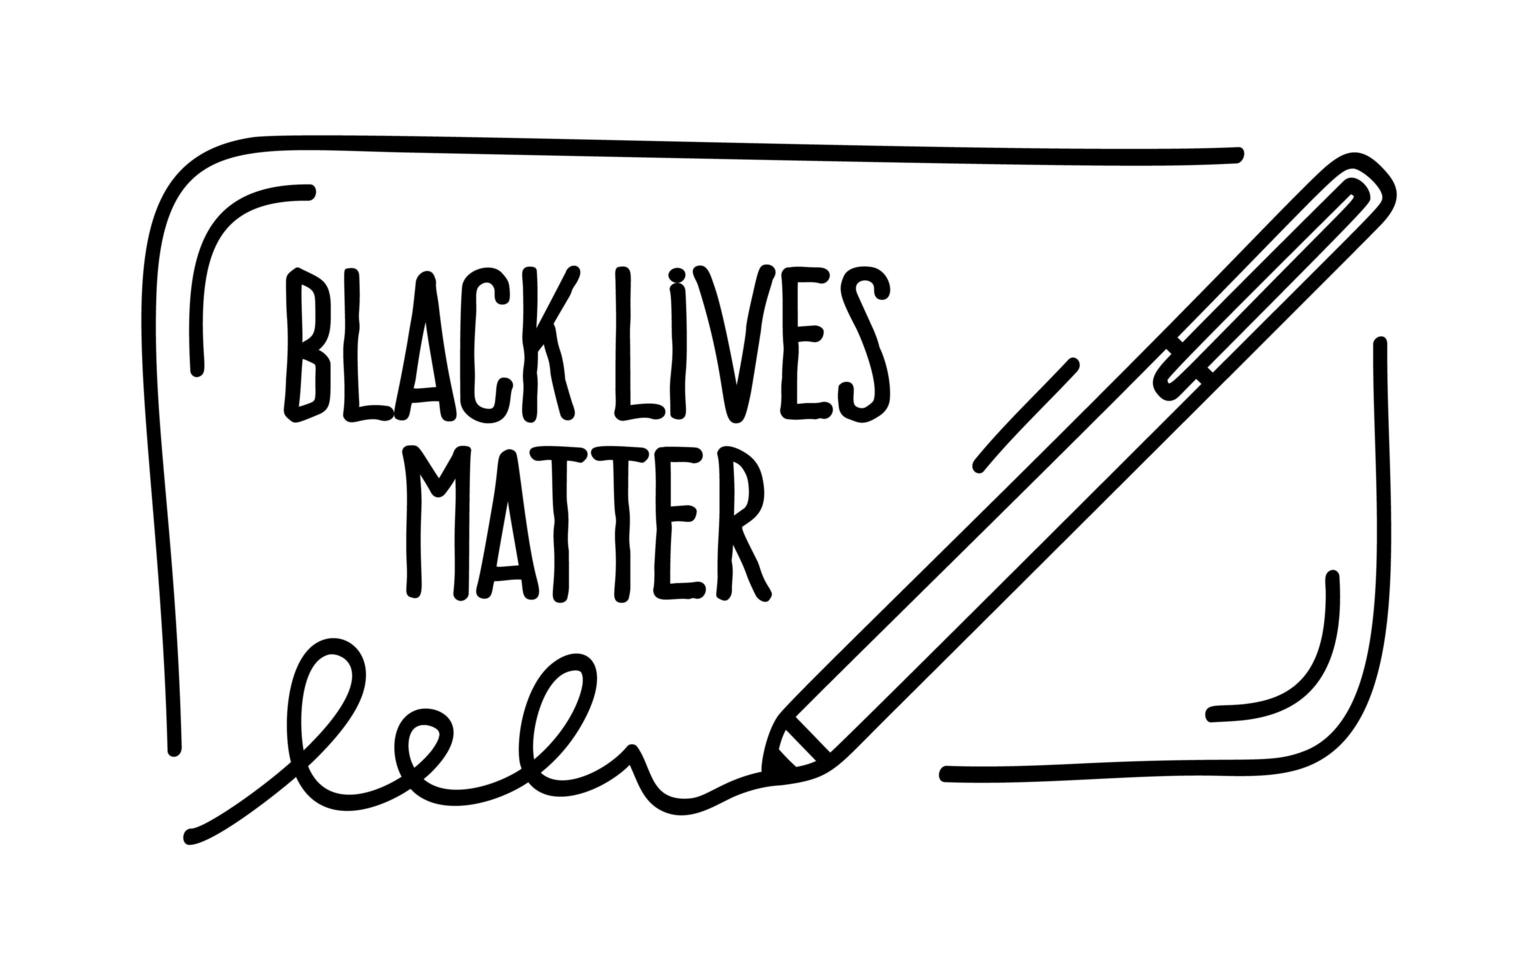 Les vies noires comptent une bannière de protestation sur les droits humains des Noirs en Amérique. illustration vectorielle. affiche et symbole de l'icône. vecteur